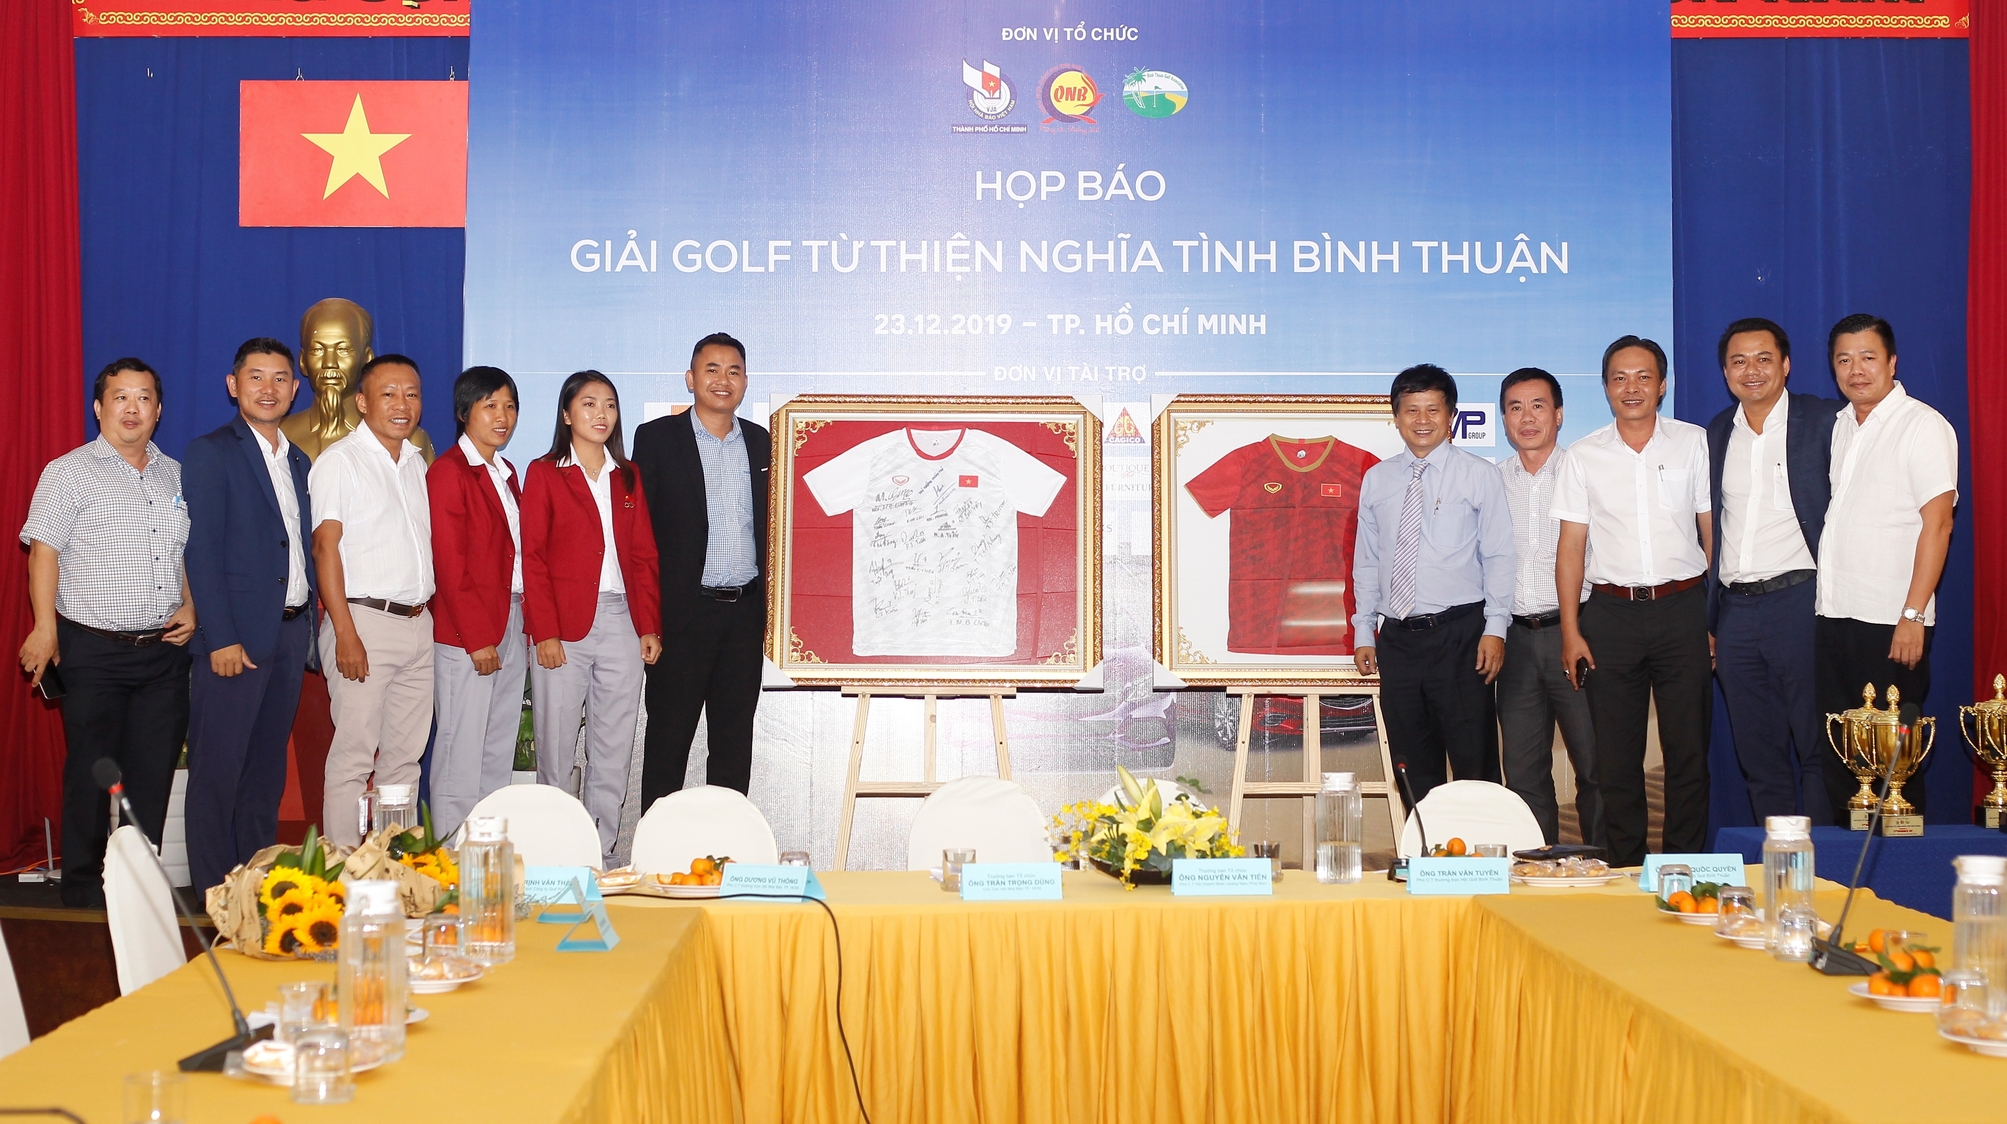 Giải Golf Từ thiện Nghĩa tình Bình Thuận chuẩn bị khởi tranh vào cuối tháng 12